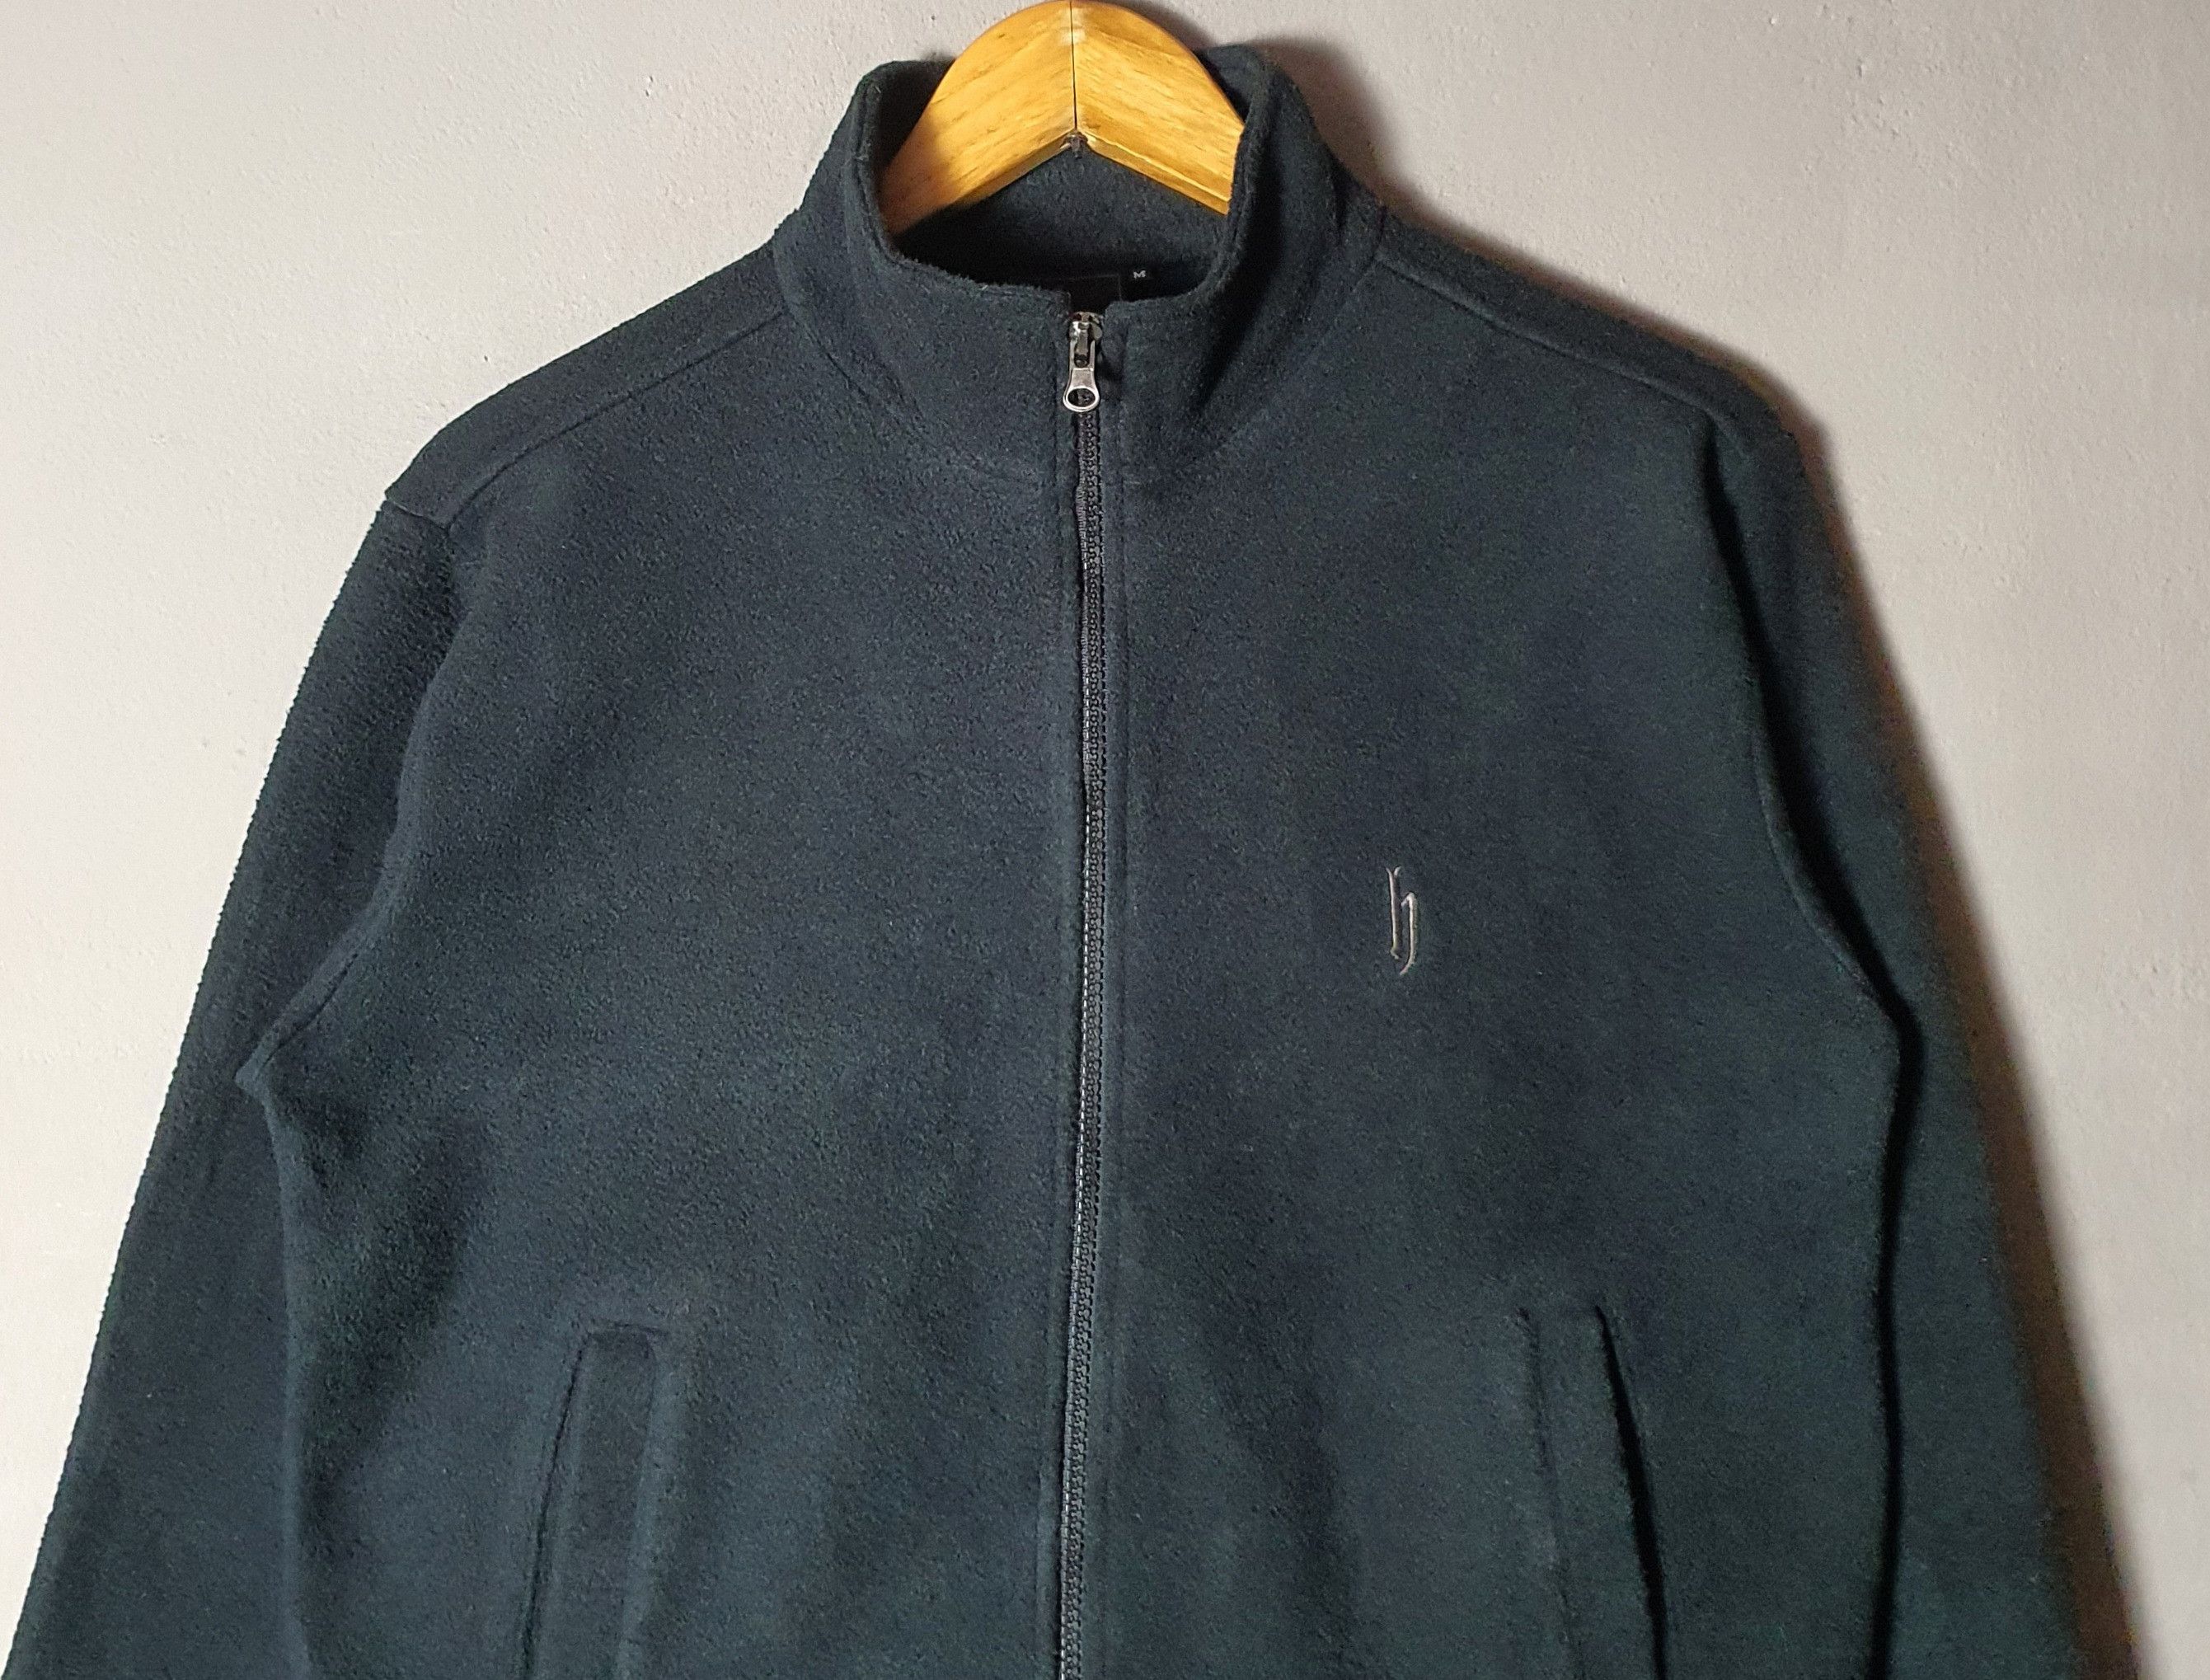 Vintage DJ HONDA 1990s Hip Hop Fleece Zipper Sweater size S-M Size US S / EU 44-46 / 1 - 5 Preview